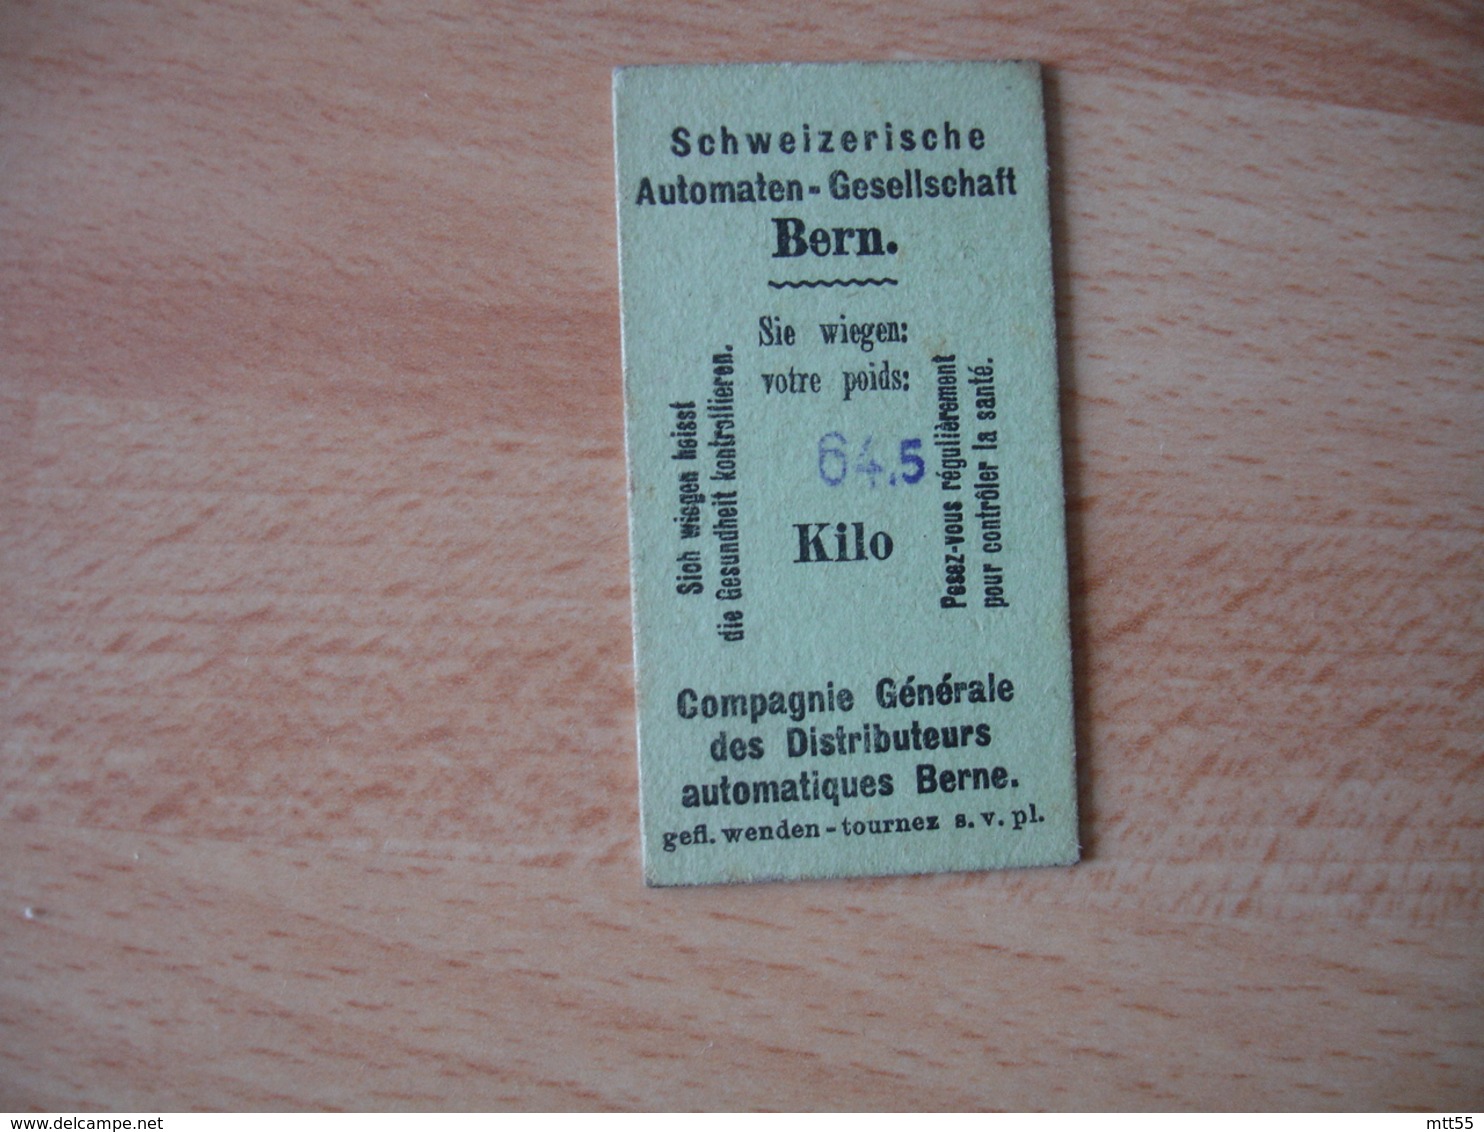 Ticket Recu Pesage  Bern Berne   Publicite Chocmel Kohler Chocolat Lait - Publicités